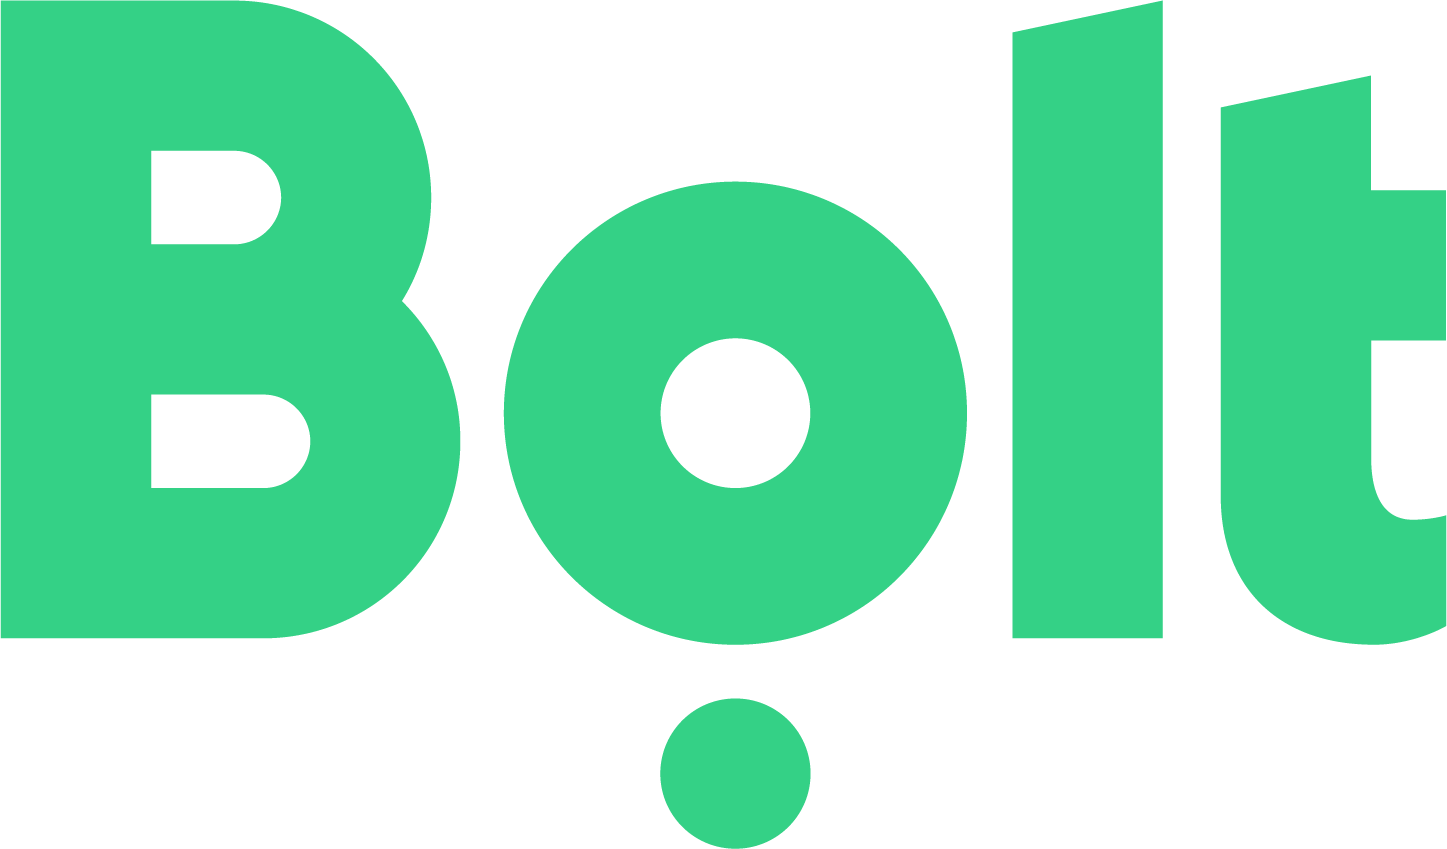 bolt taxi logo green